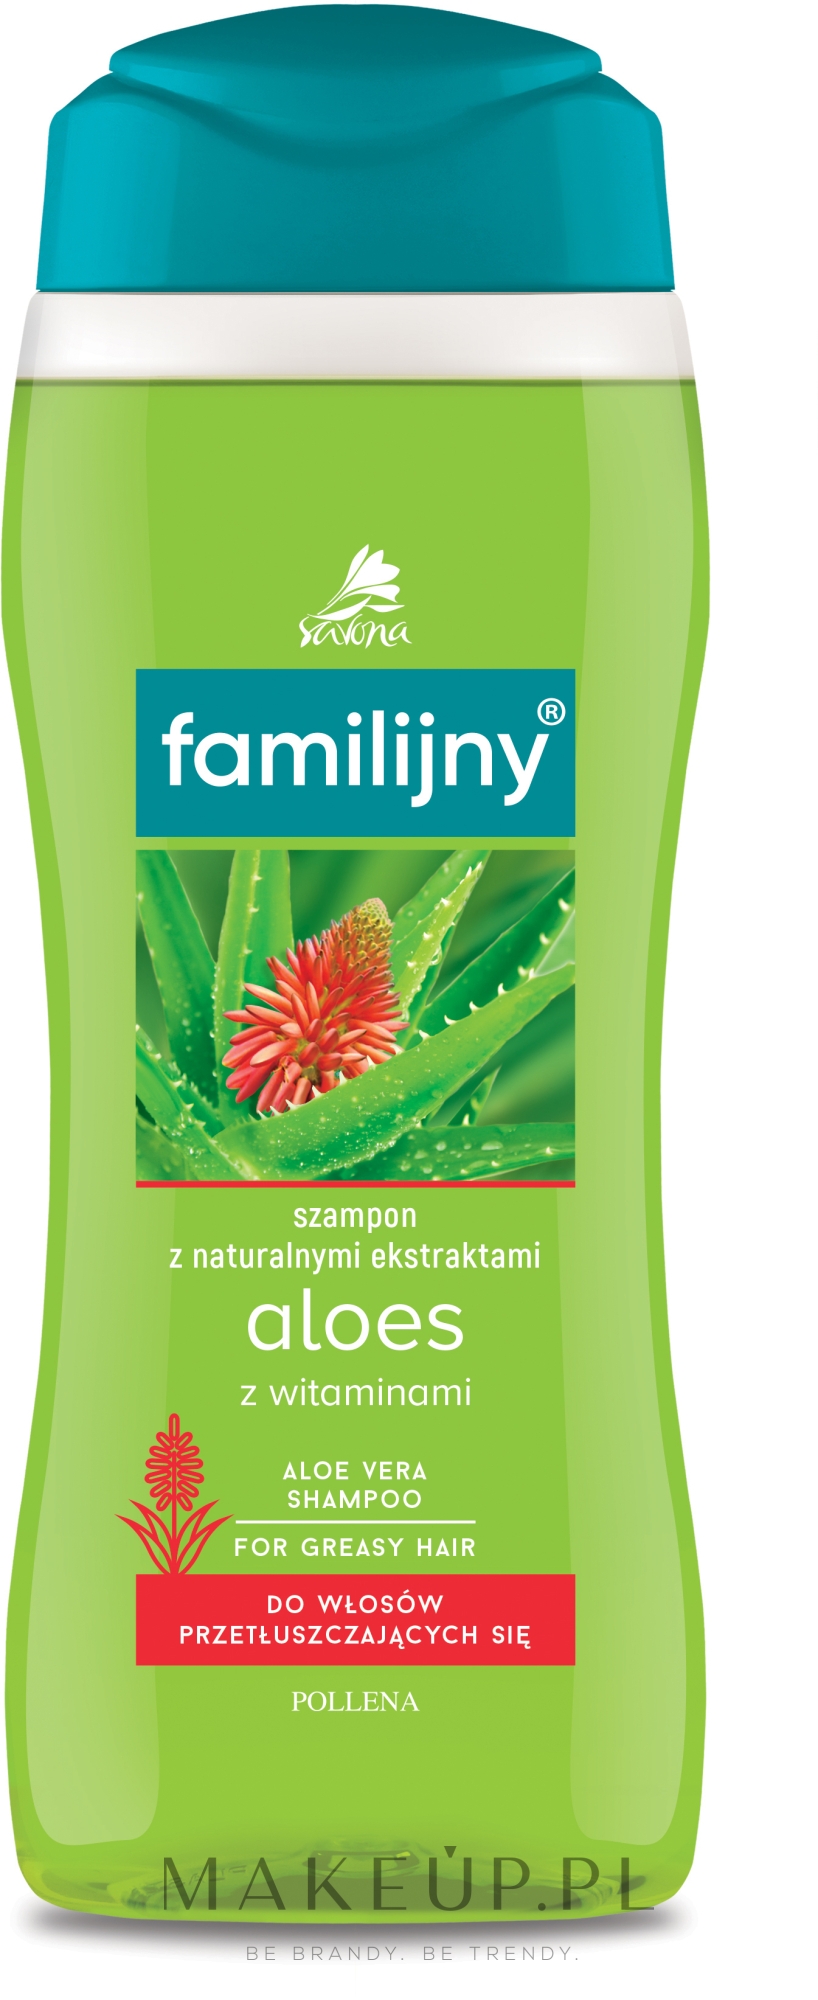 pollena savona szampon familijny skład chemiczny